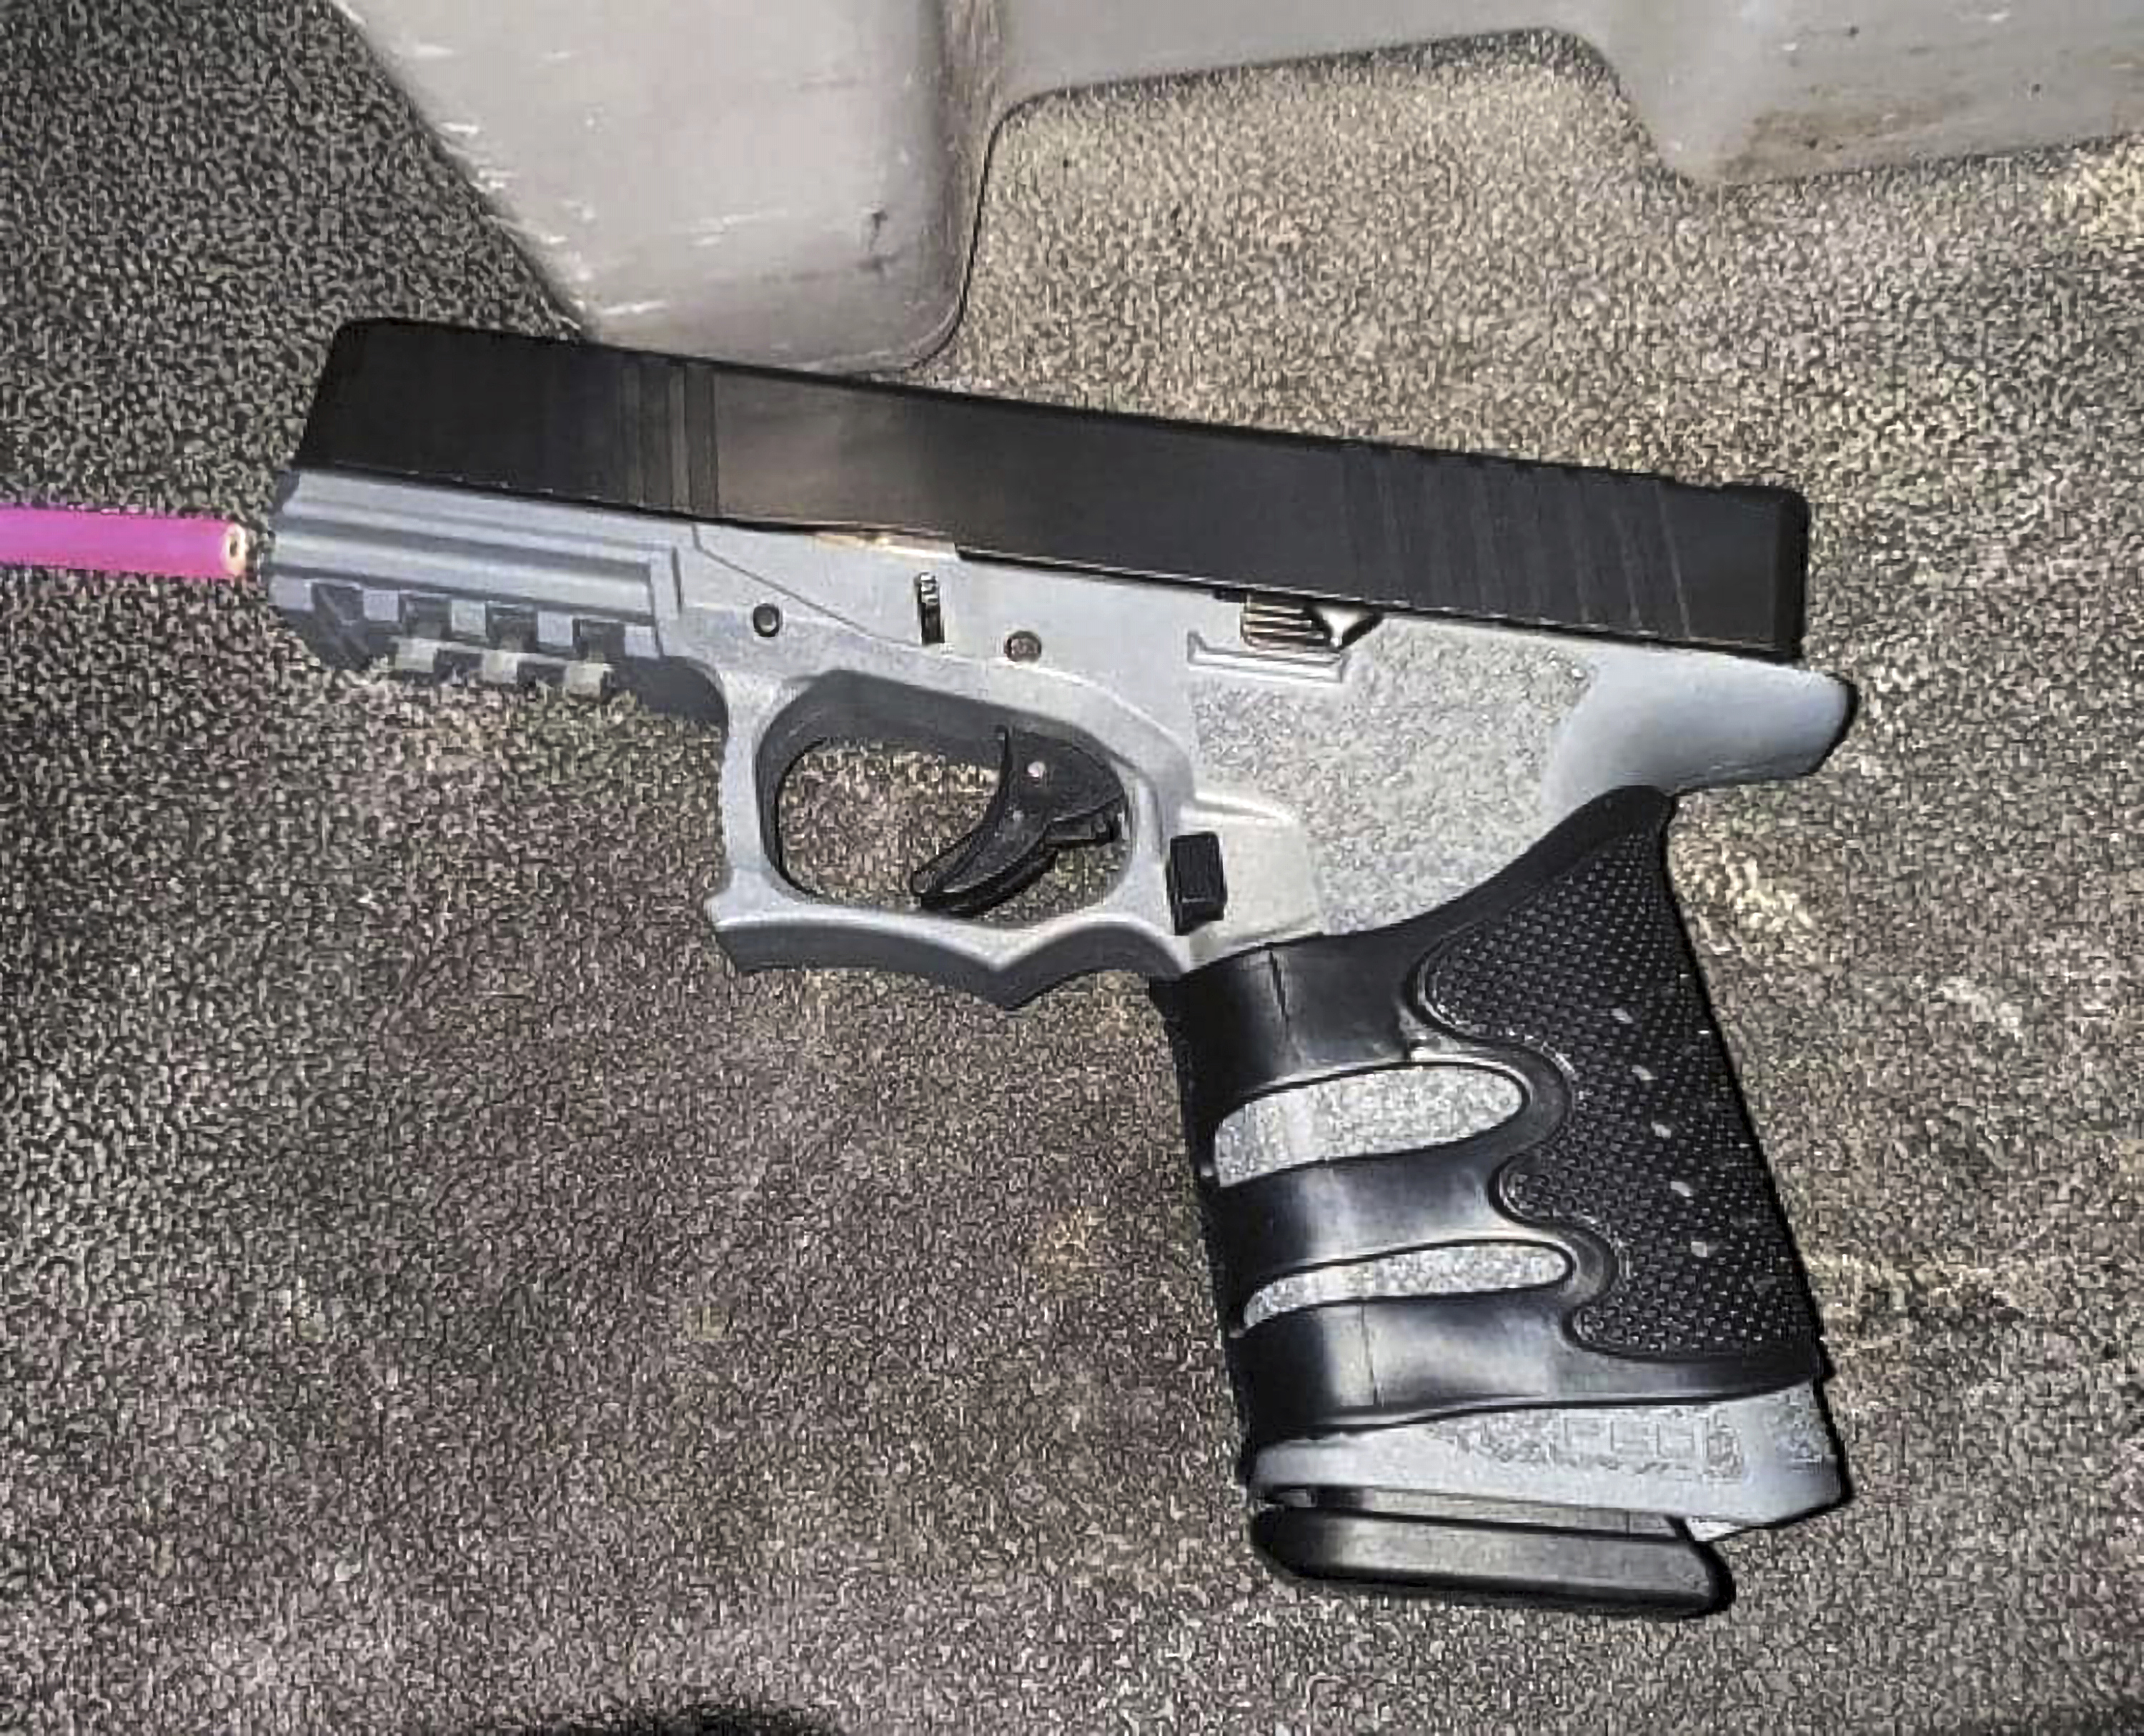 Un arma encontrada en posesión de Wesley Brownlee, quien fue arrestado el sábado 15 de octubre de 2022 en relación con una serie de tiroteos.